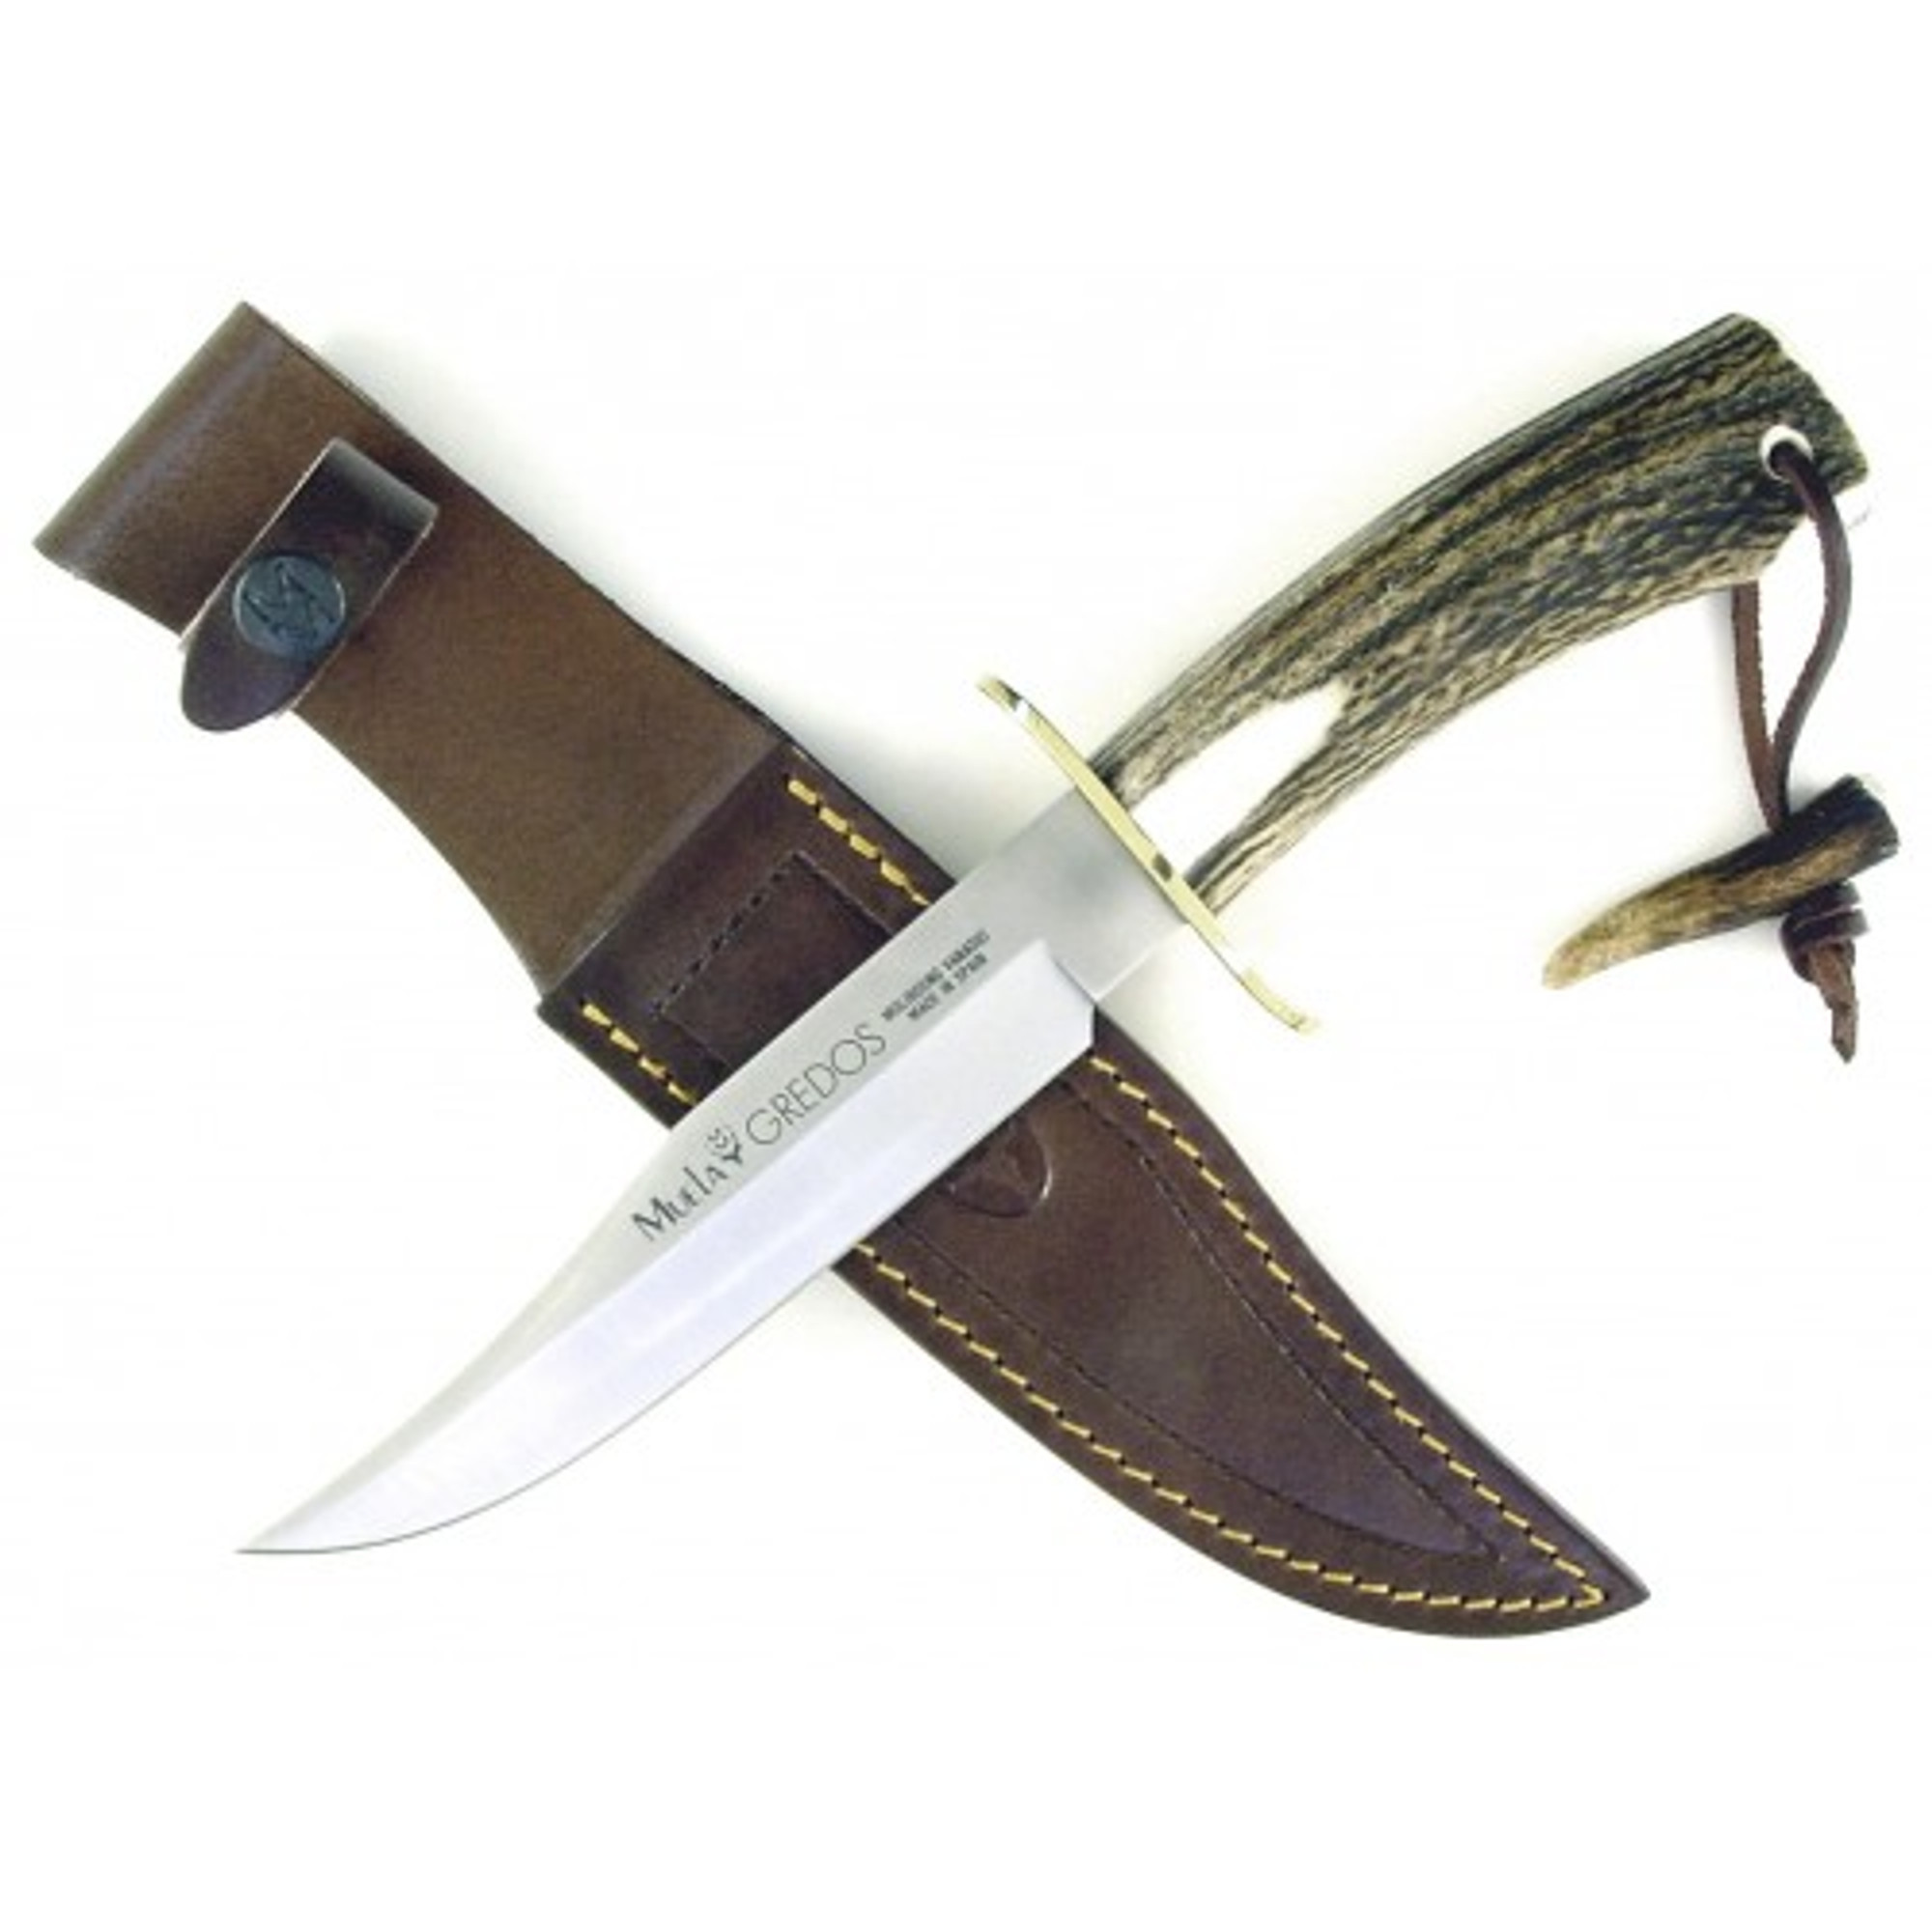 MUELA GRED-16, X50CrMoV15, 6-1/4" Fixed Blade Hunting Knife, Deer Horn Handle